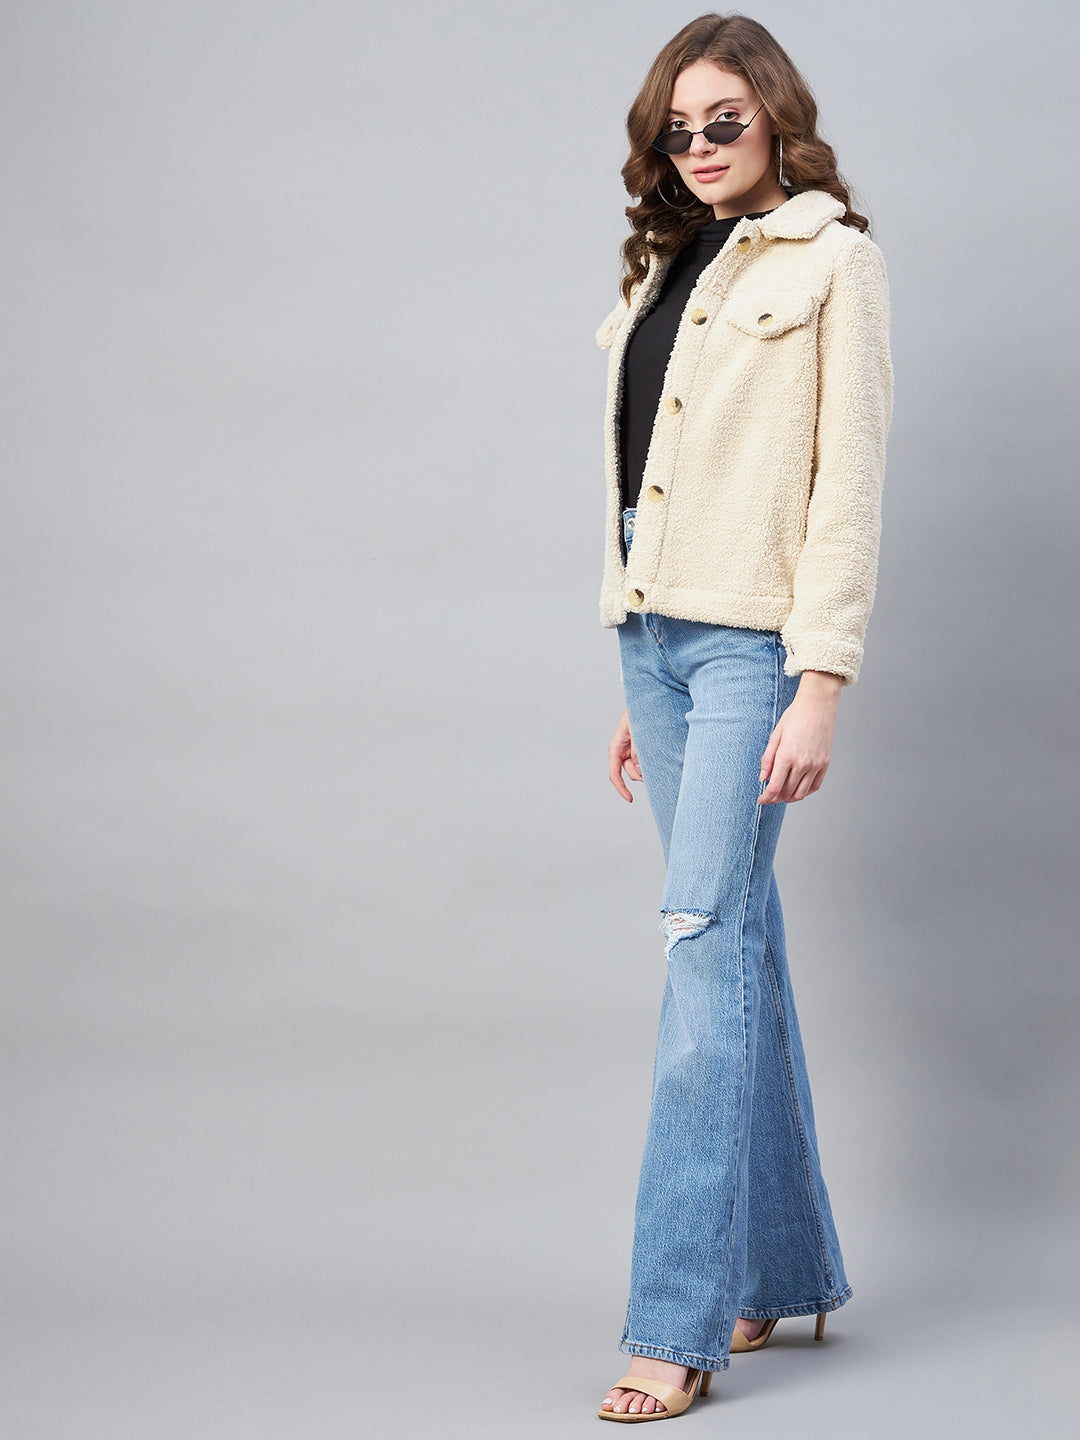 StyleStone Women's Cream Fleece Casual Winter Jacket